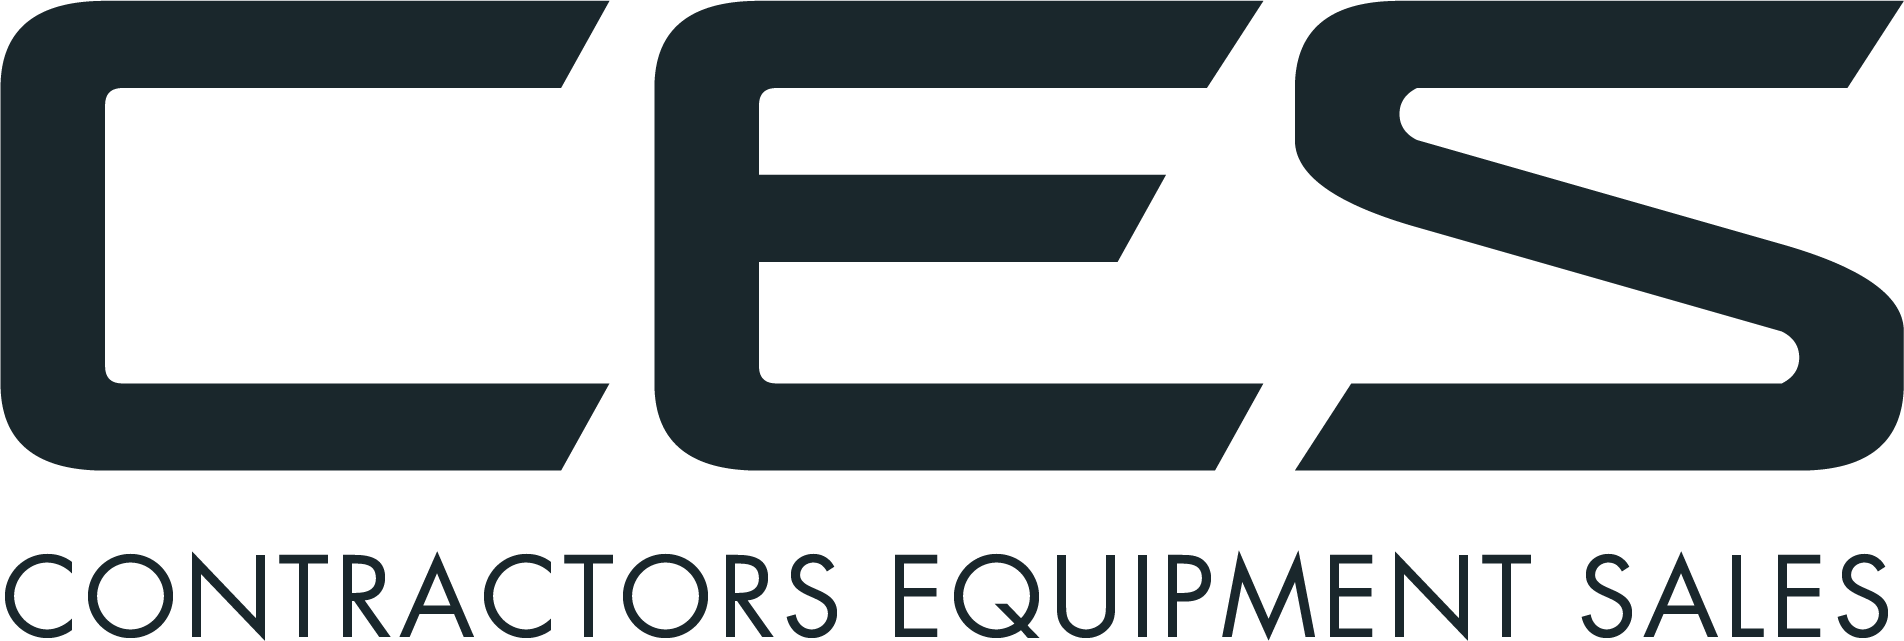 Contractors Equipment Sales